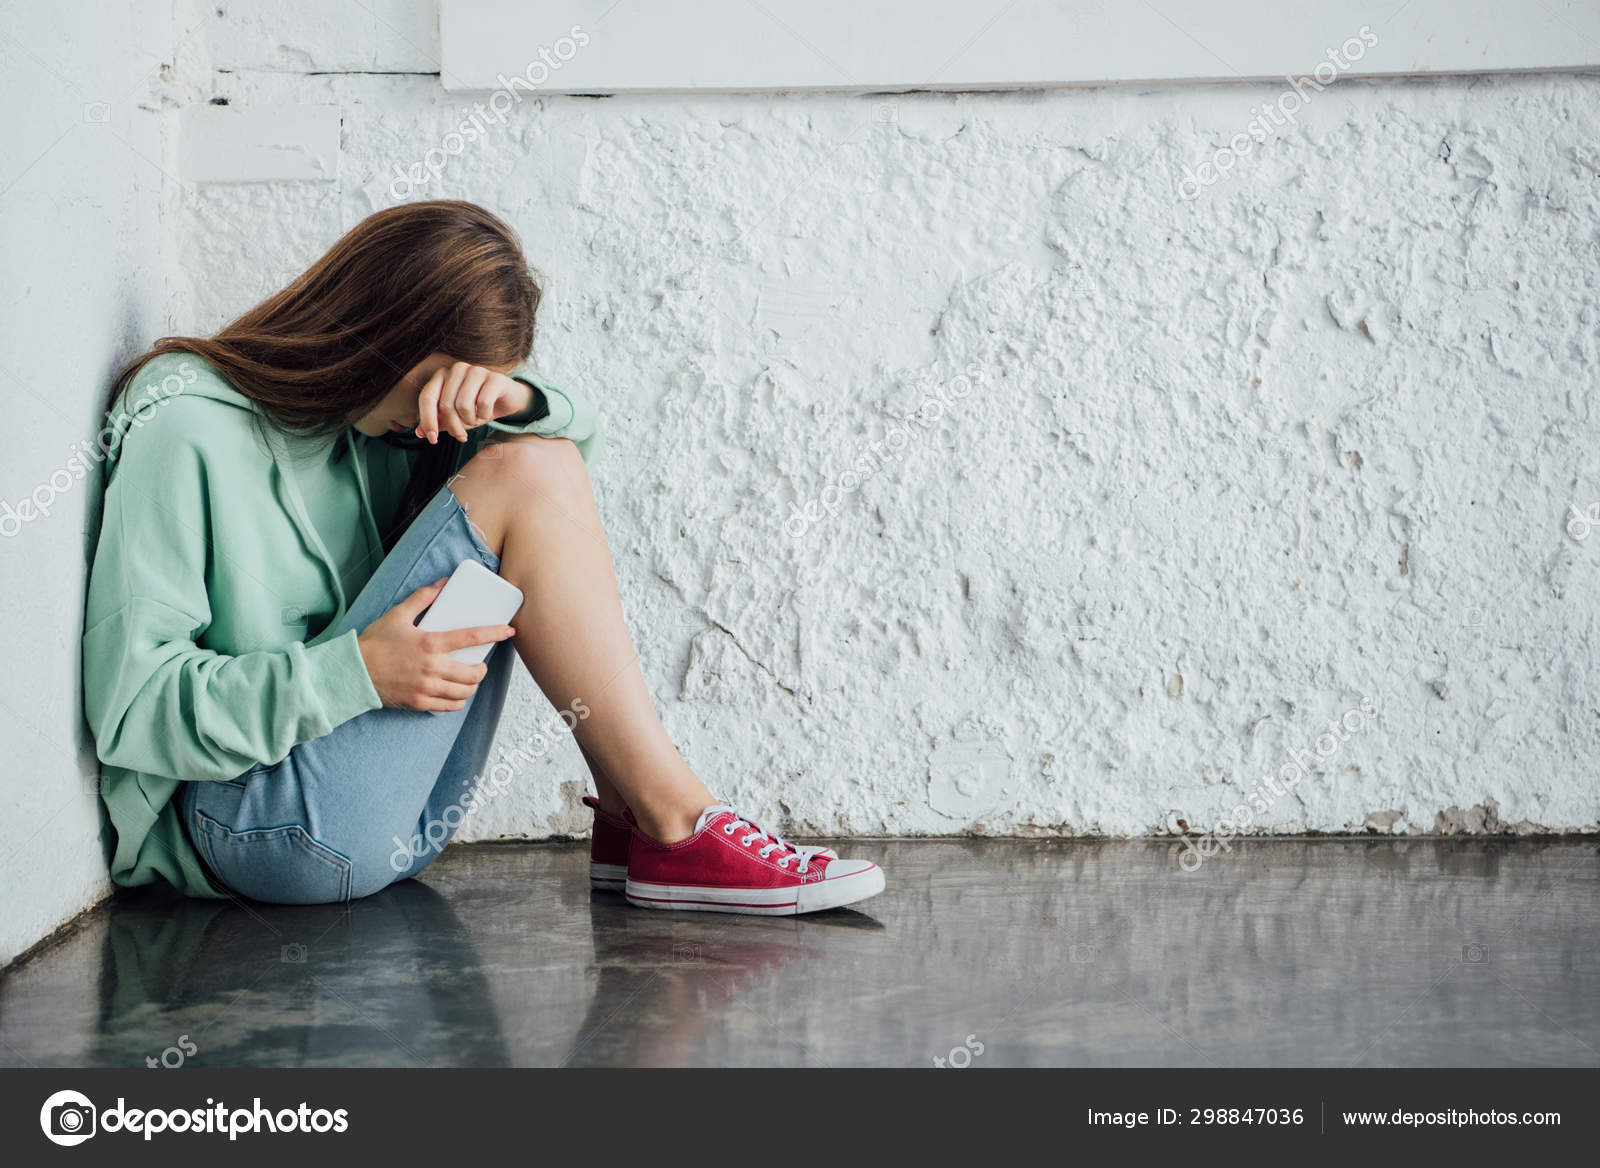 Depressão, tristeza, menina chorando imagem vetorial de  tomozina1.yandex.ru© 313662170